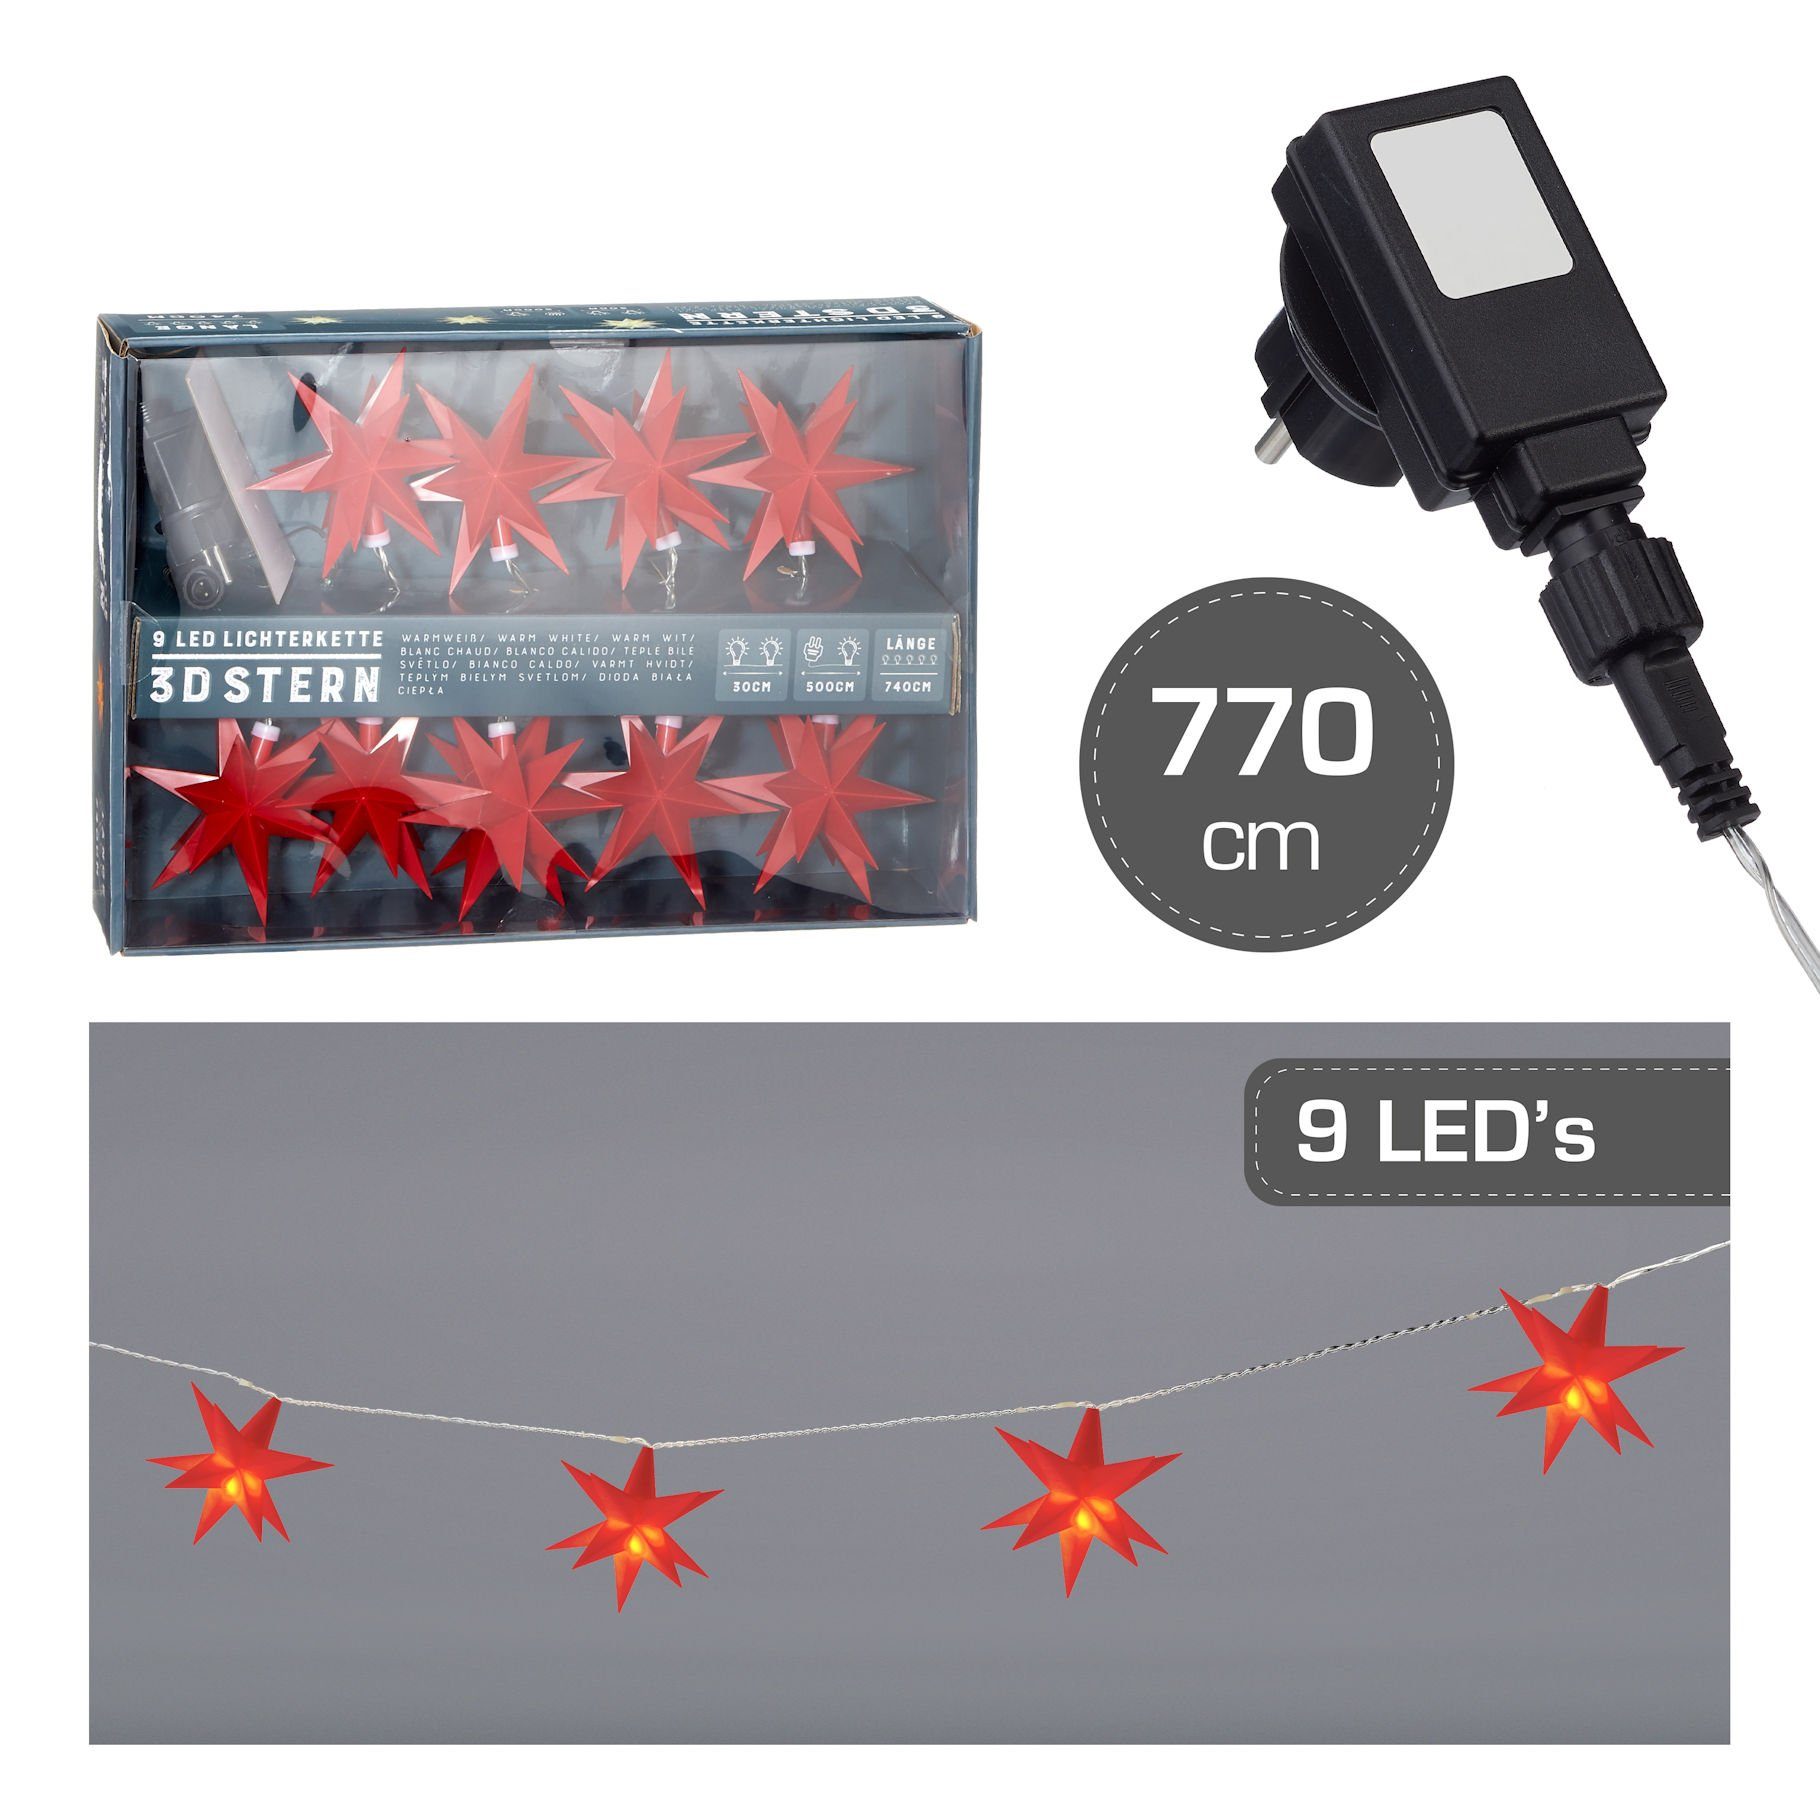 LED-Girlande den Außenbereich Lichterkette Sterne rot, Stern 3D 9 Spetebo LED mit - geeignet in für